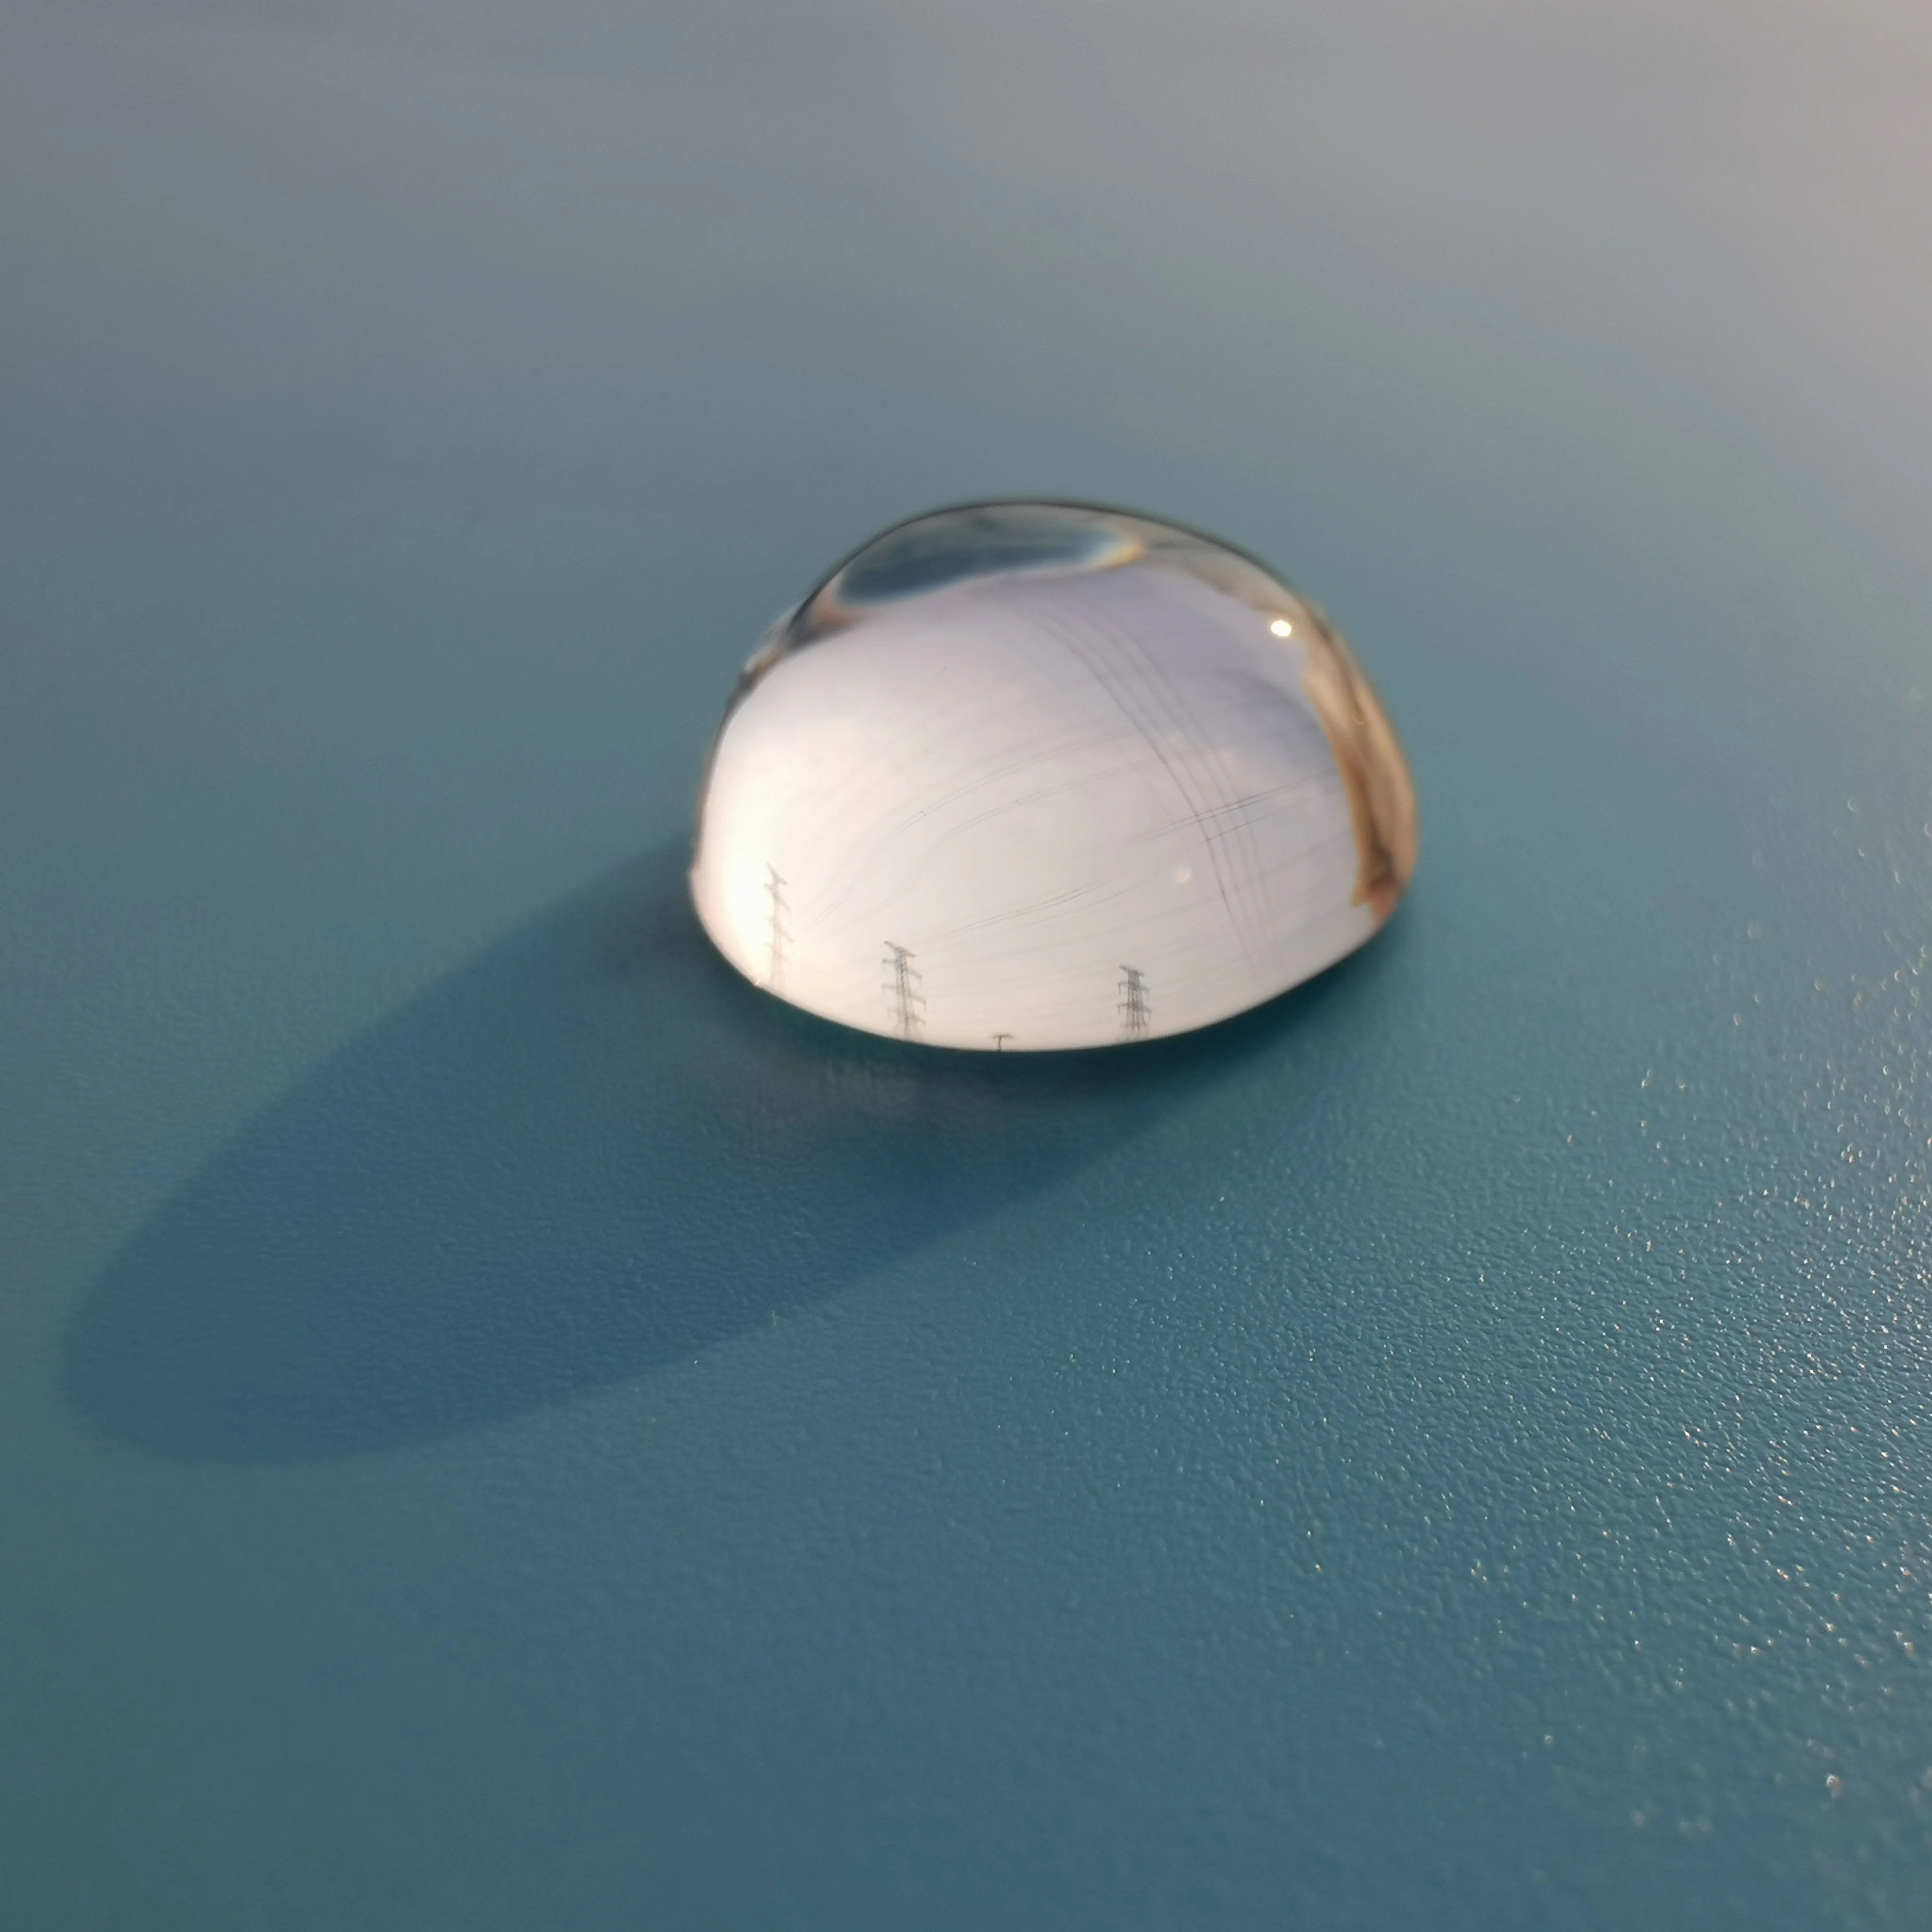 K9 оптическая линза плоское выпуклое зеркало 16 мм диаметр, 10 мм фокусное расстояние, объектив проектора физический эксперимент обучающий инструмент